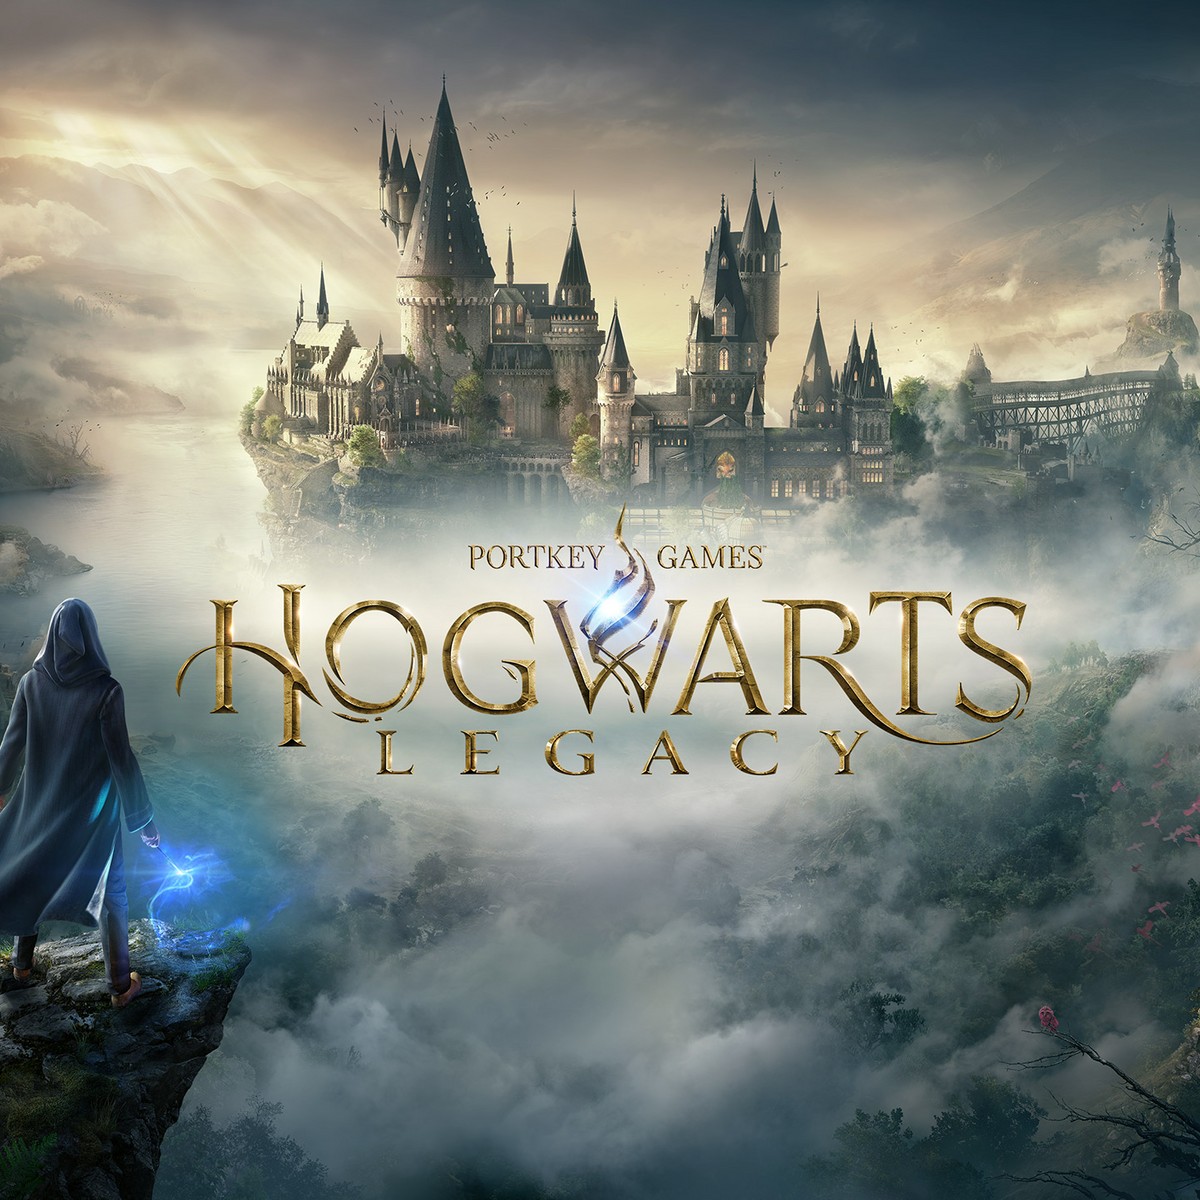 Hogwarts Legacy: comparativo entre PS4 e PS5 destacam bons